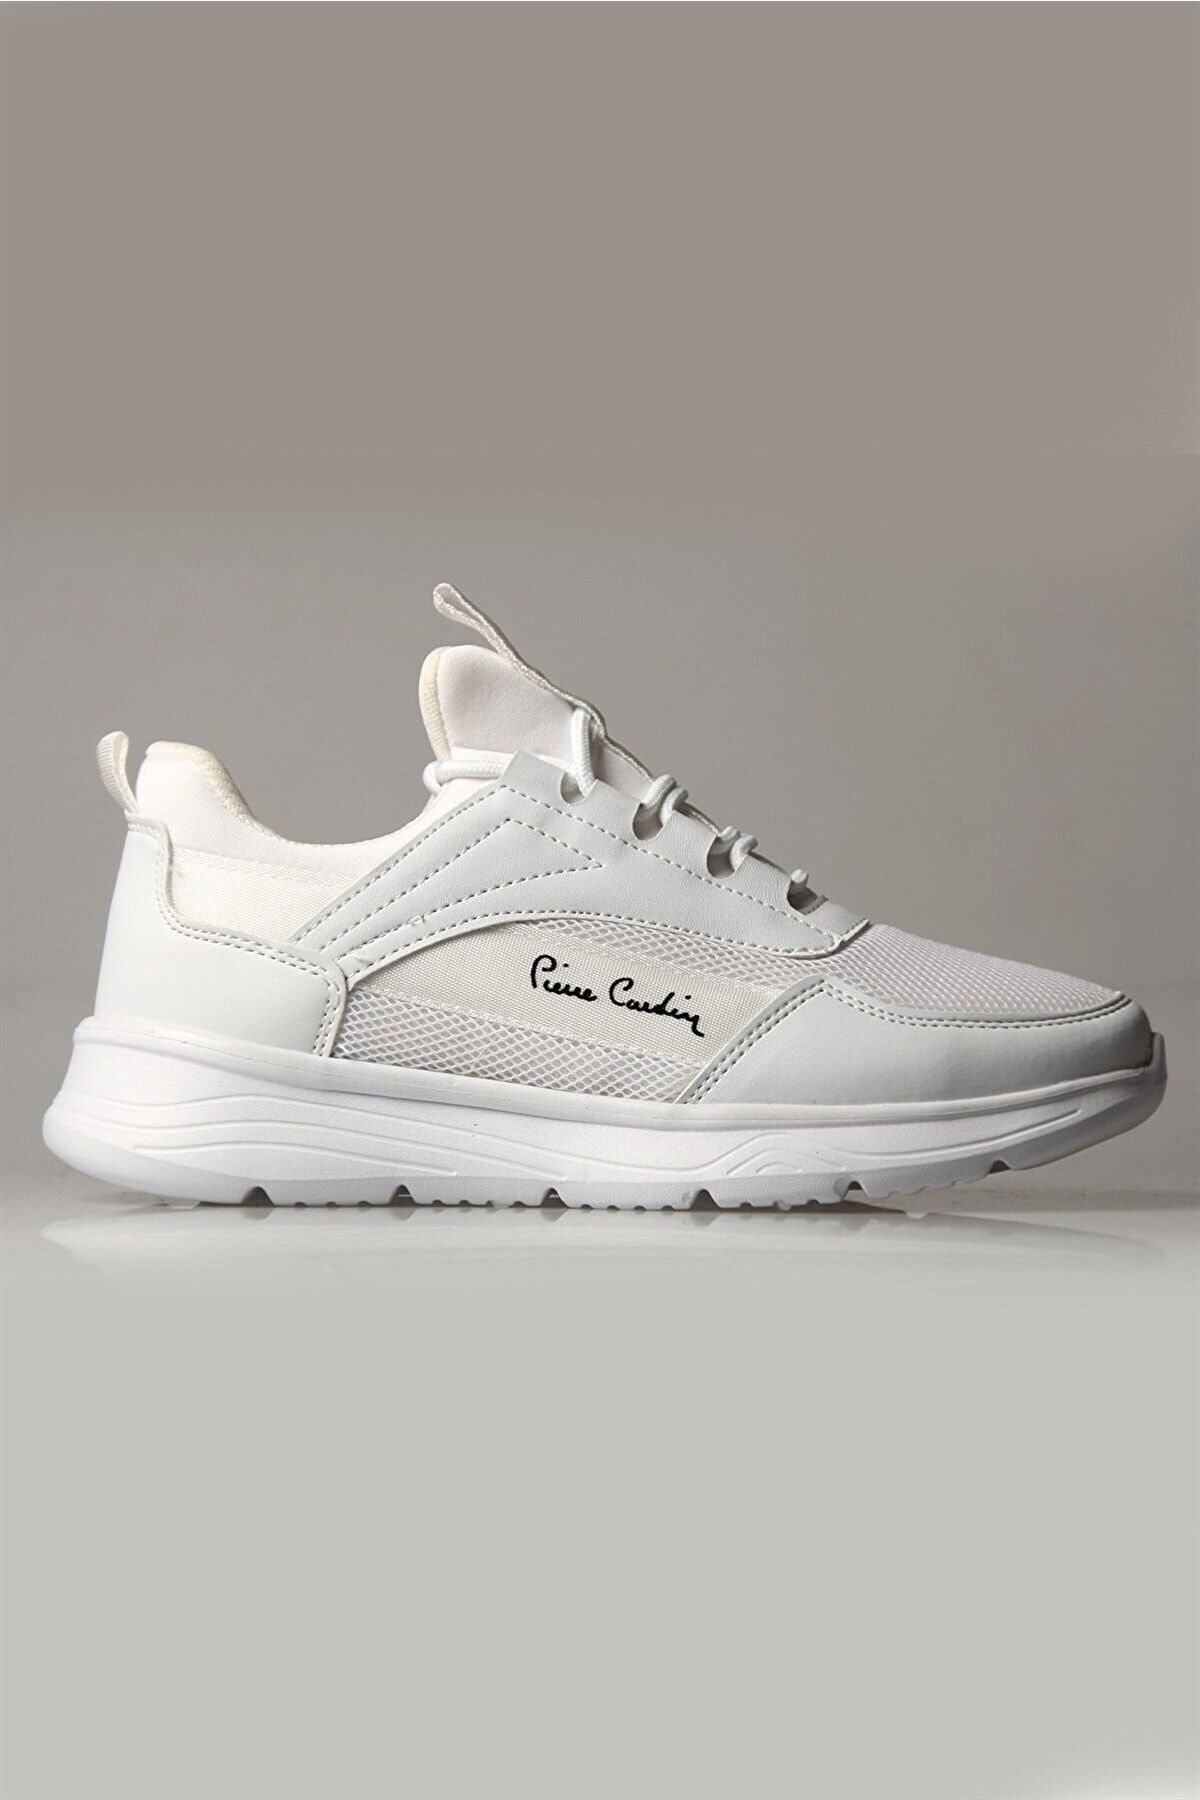 Pierre Cardin Pc-30585 Unisex Sneaker Ayakkabı - Beyaz - 40